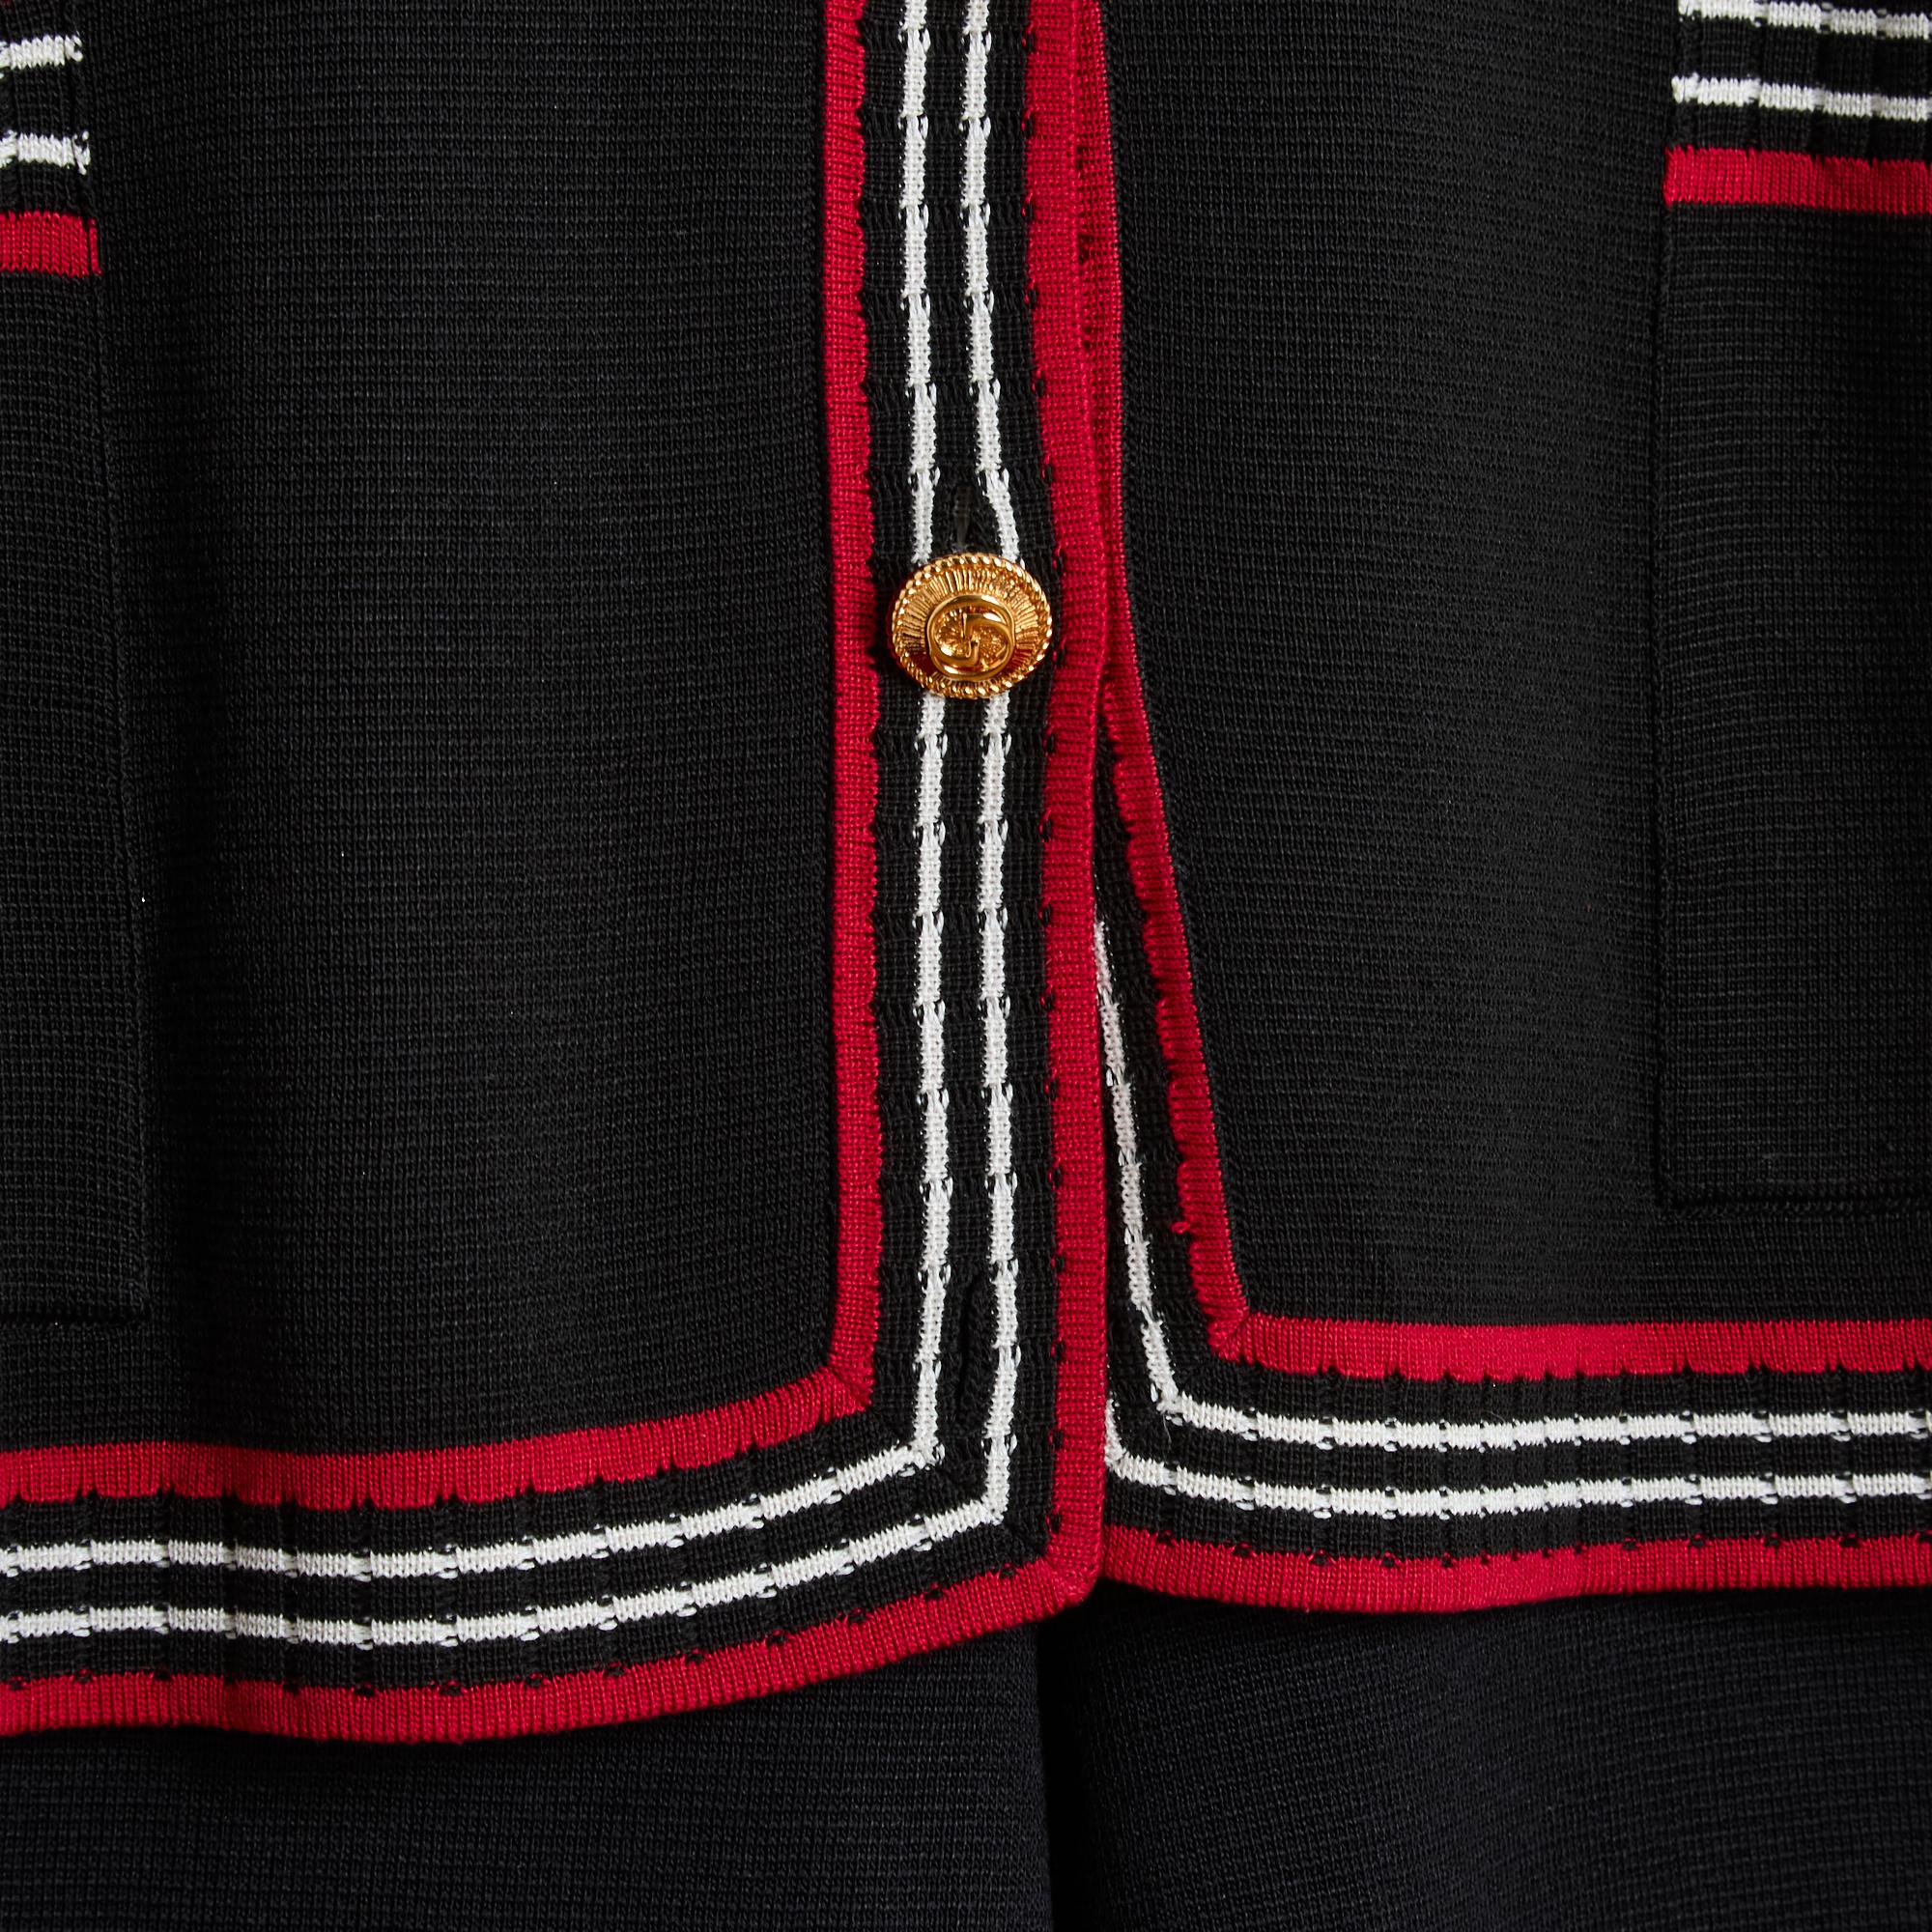 Ensemble de la collection Gucci Pre Fall 2019 par Alessandro Michele en maille de soie (28%) et coton noir bordé d'un liseré contrastant rouge noir blanc, composé d'un cardigan au volume oversize, col cranté fermé par 4 boutons en métal doré, 2